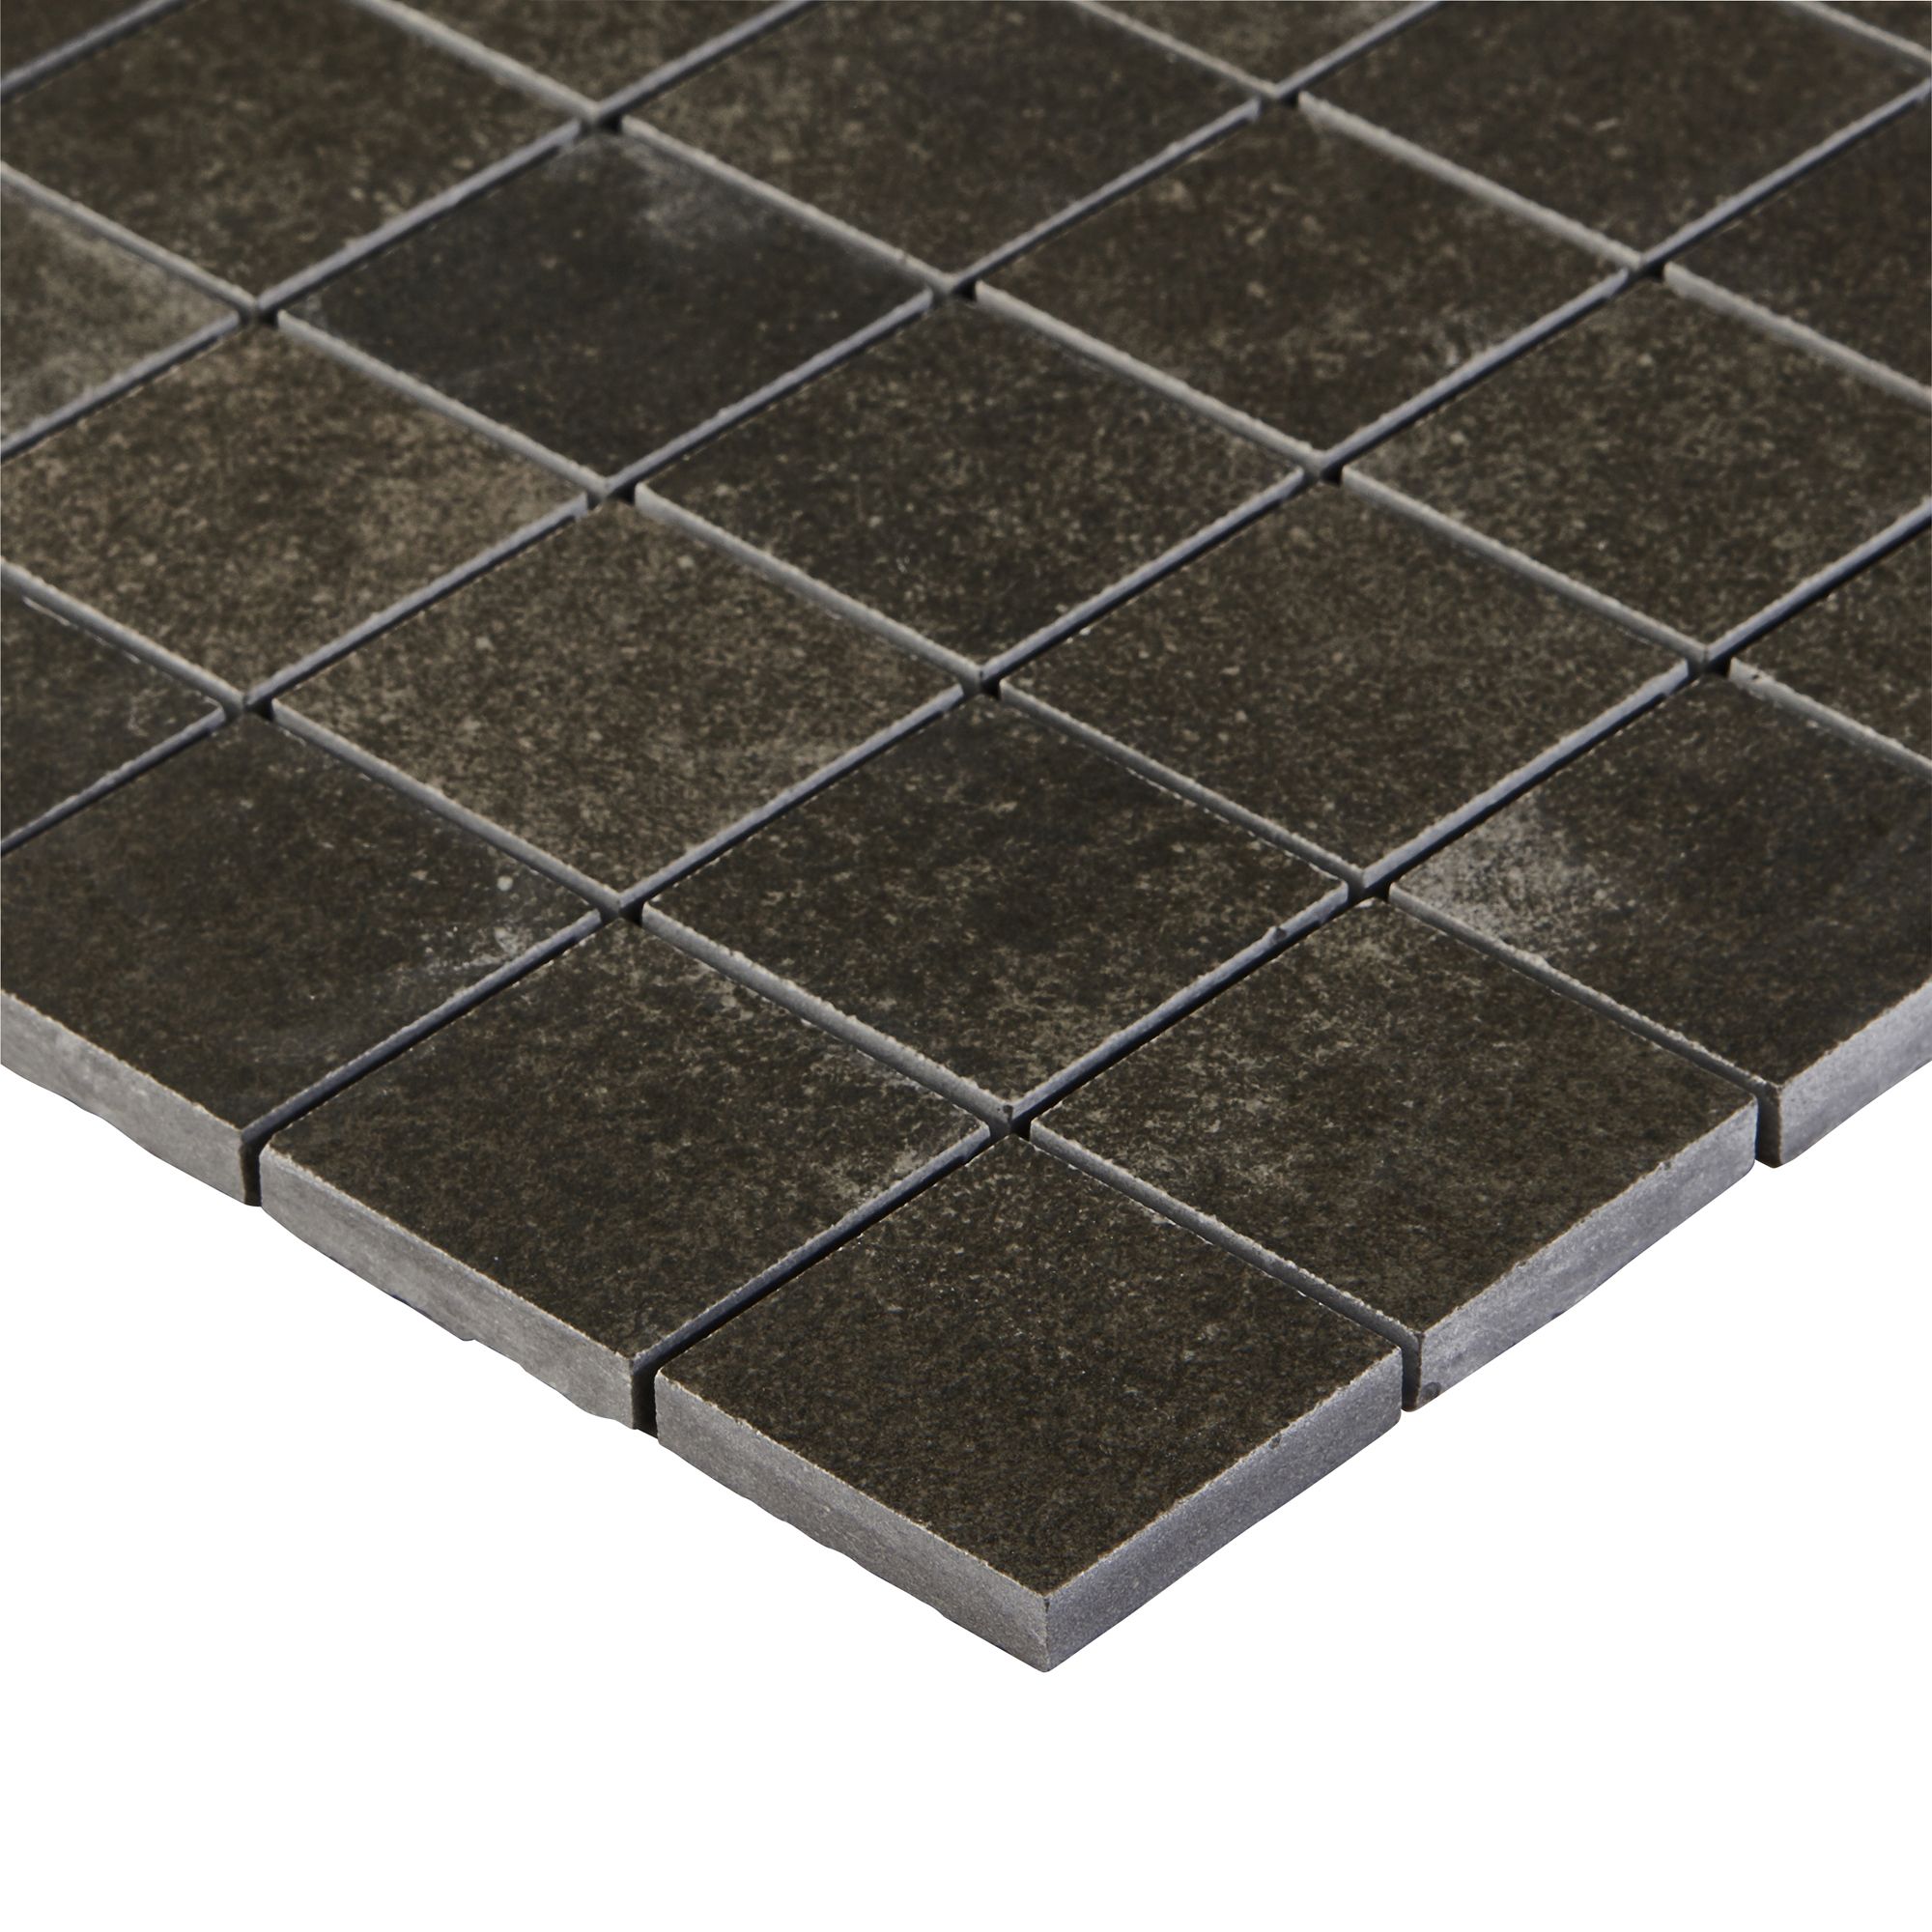 Kontainer Anthracite Matt Concrete effect Mosaic Porcelain 5x5 Mosaic tile sheet, (L)305mm (W)305mm